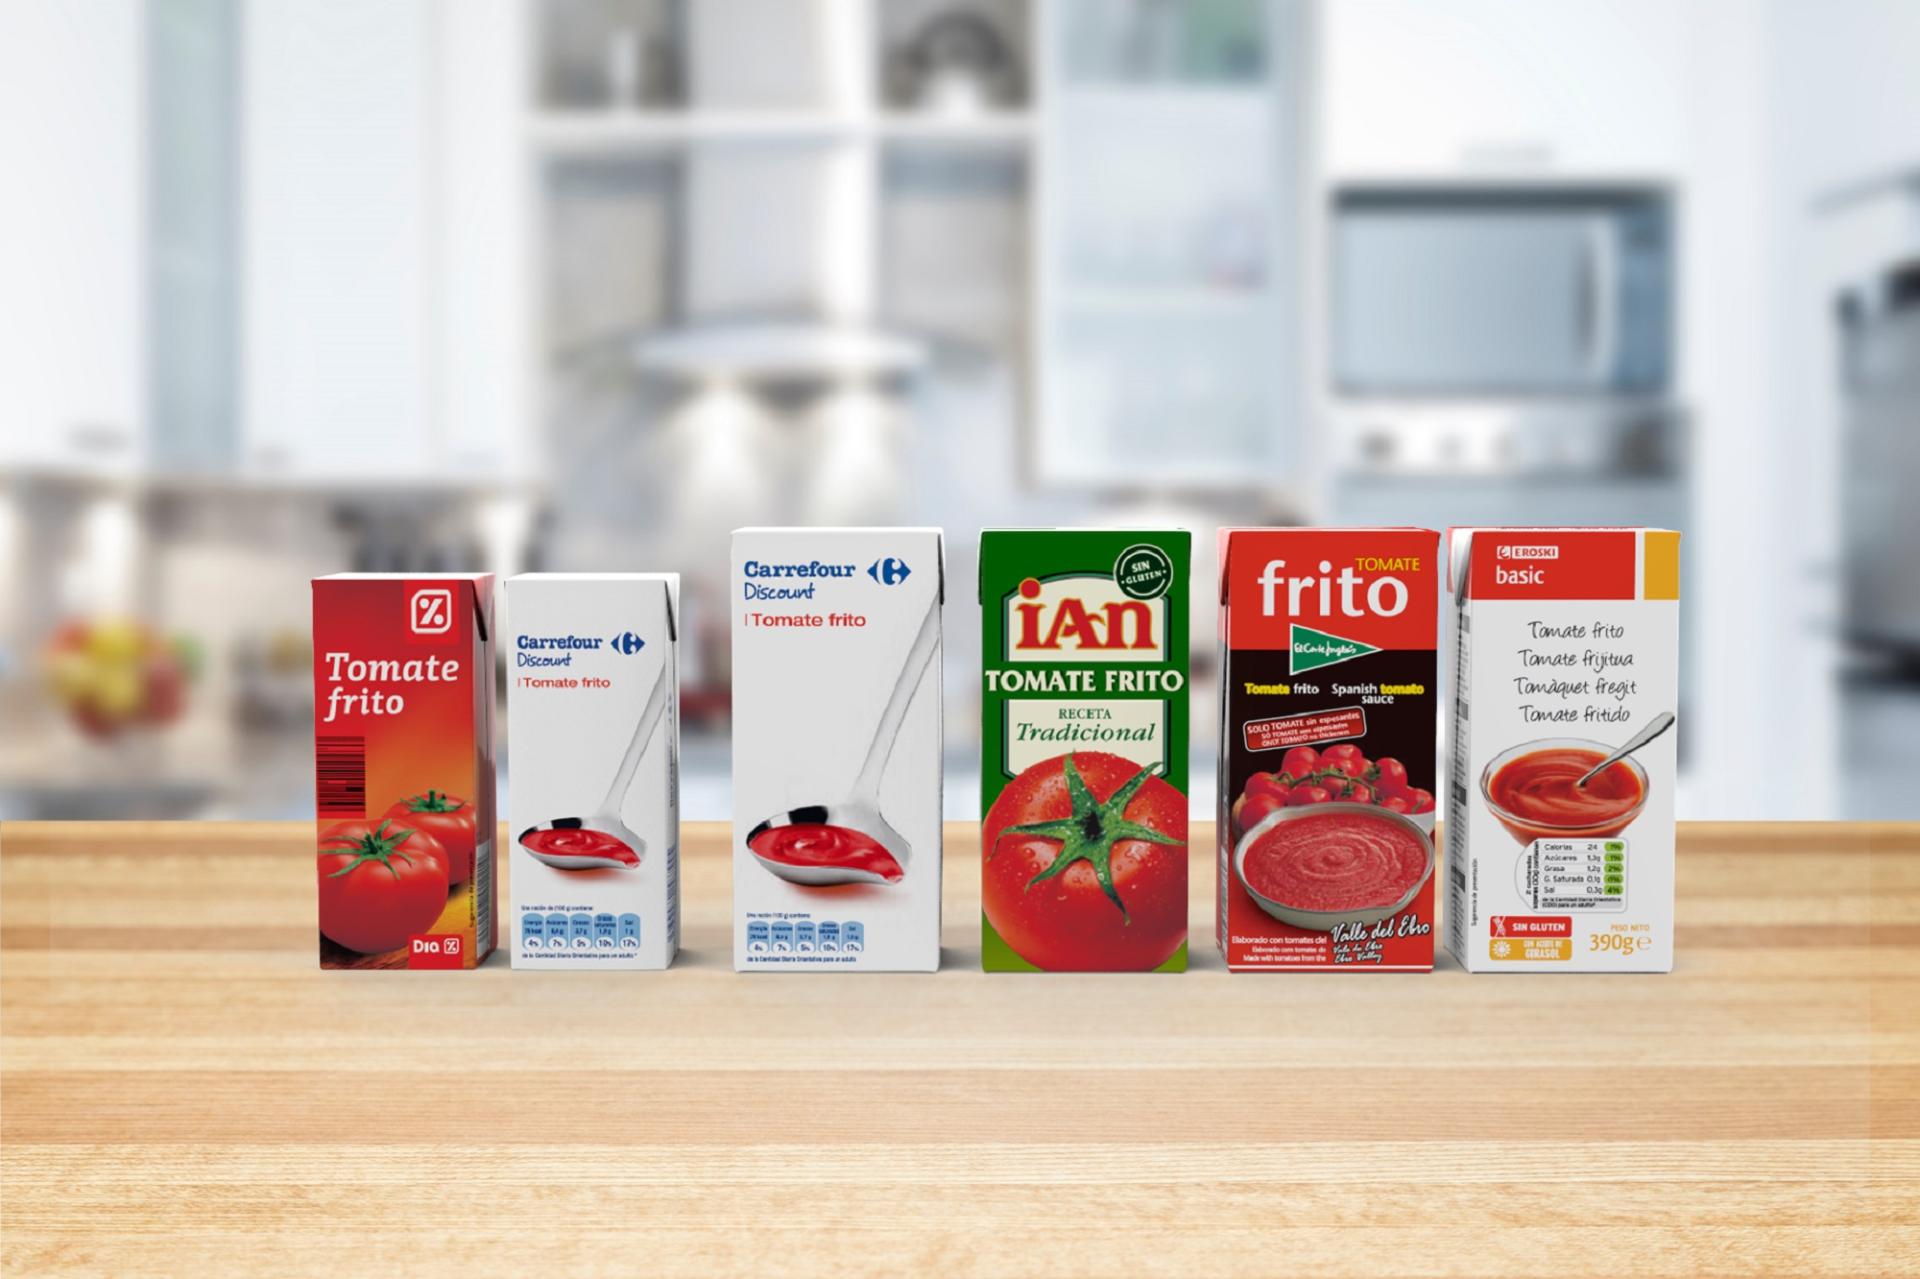 Les remplisseuses IPI peuvent emballer la tomate passata et le tomate frito dans des briques en carton aseptique